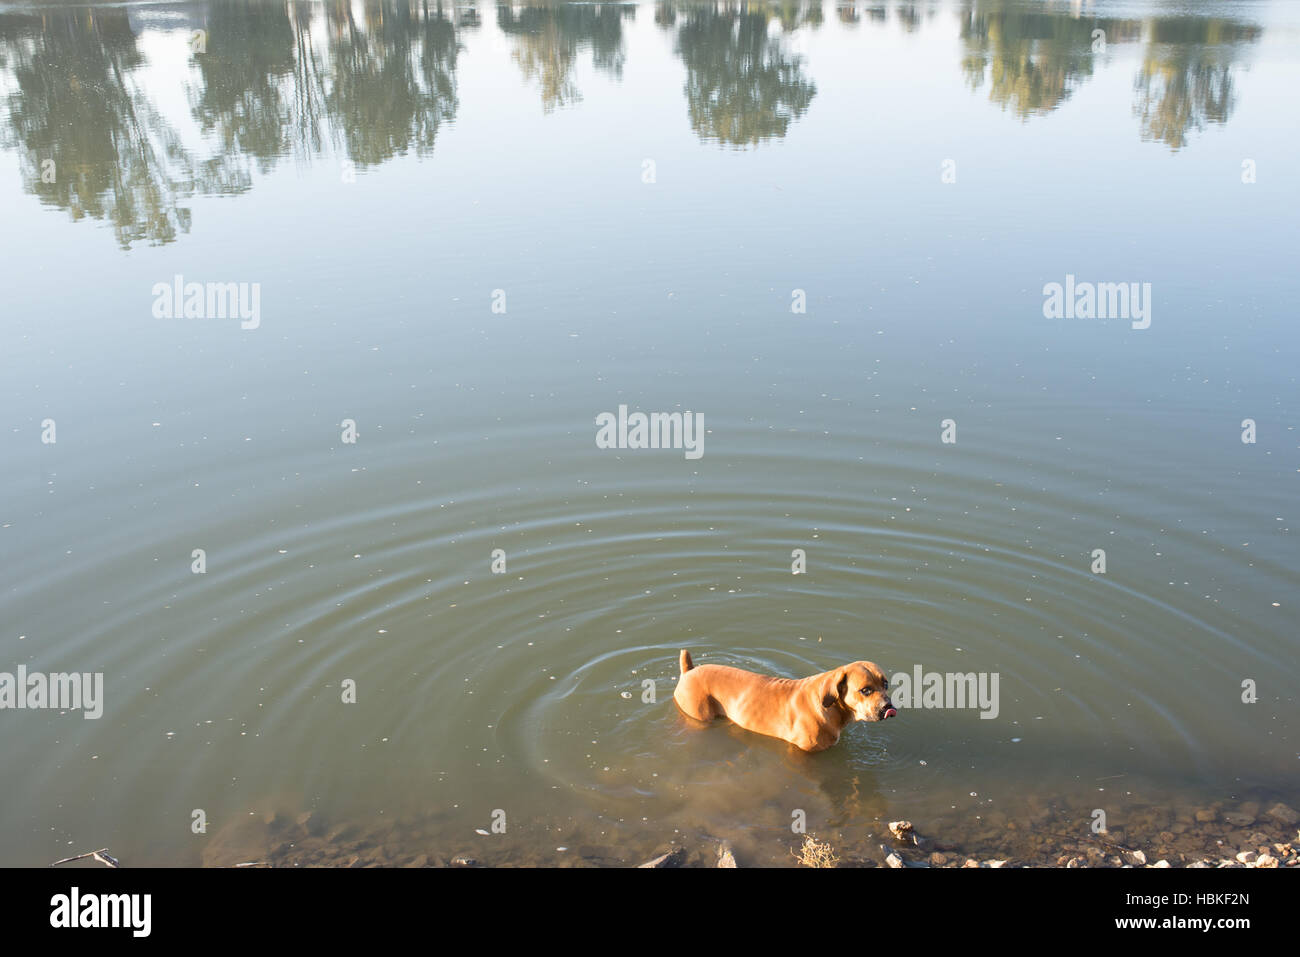 Boerboel dog in River Stock Photo